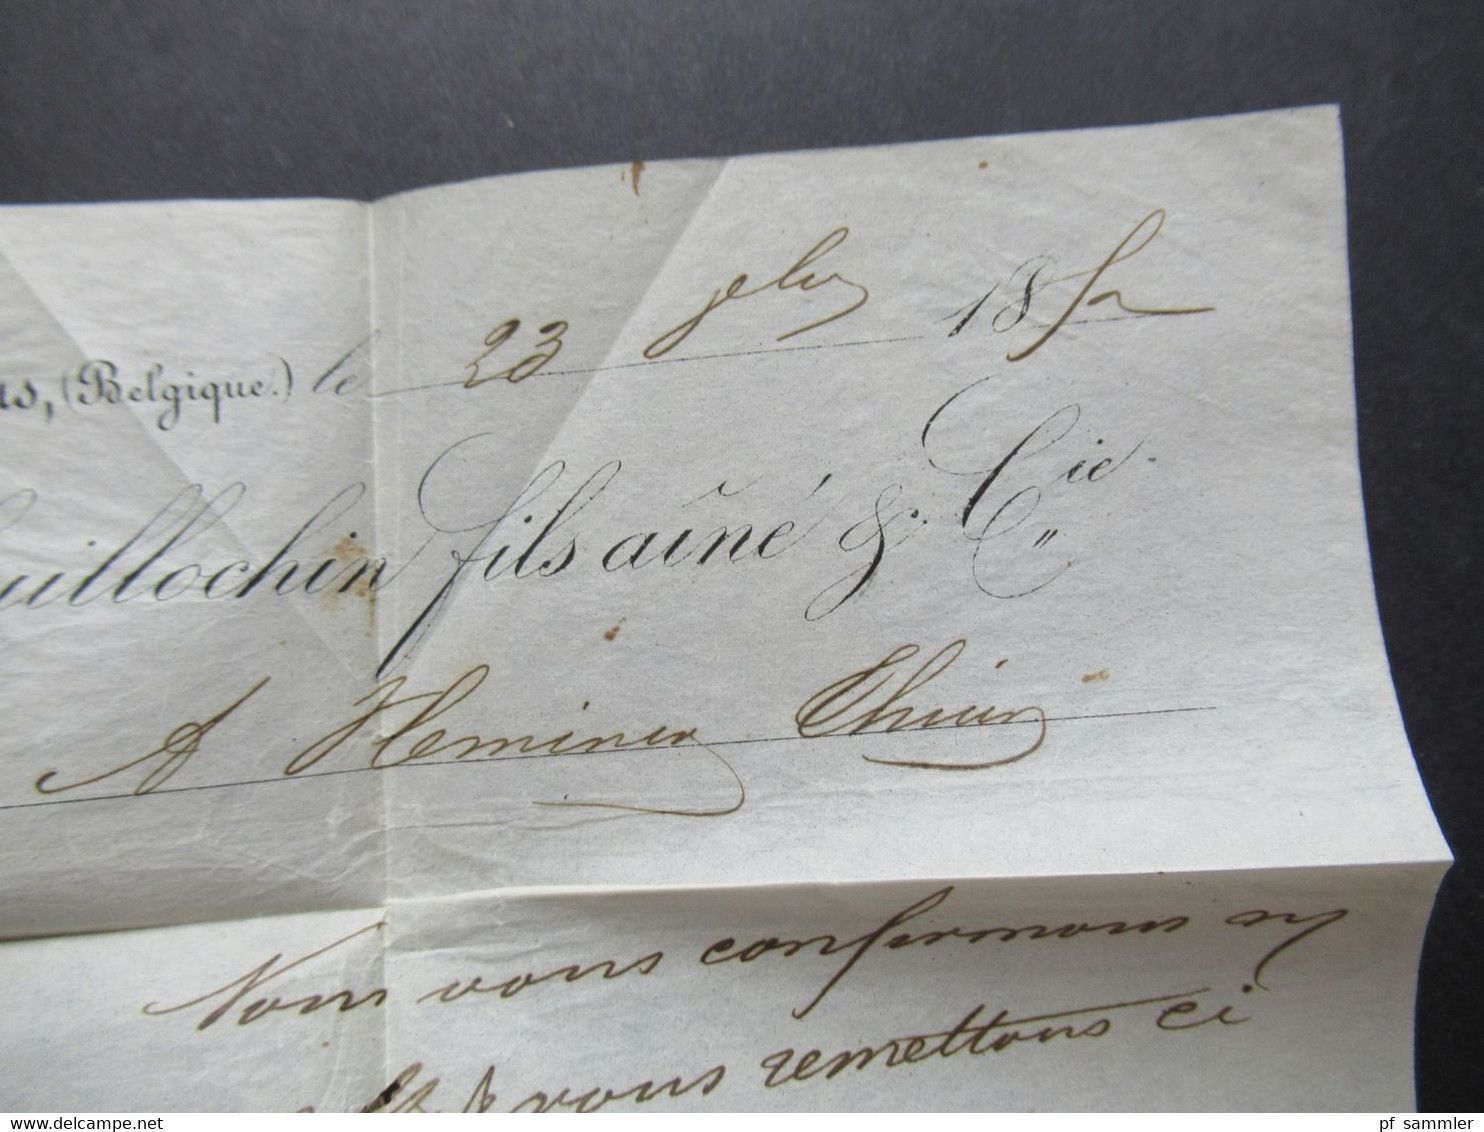 Belgien 1852 Mous gedruckter Brief Guillochin fils mit 2 roten Stempeln Faltbrief mit Inhalt